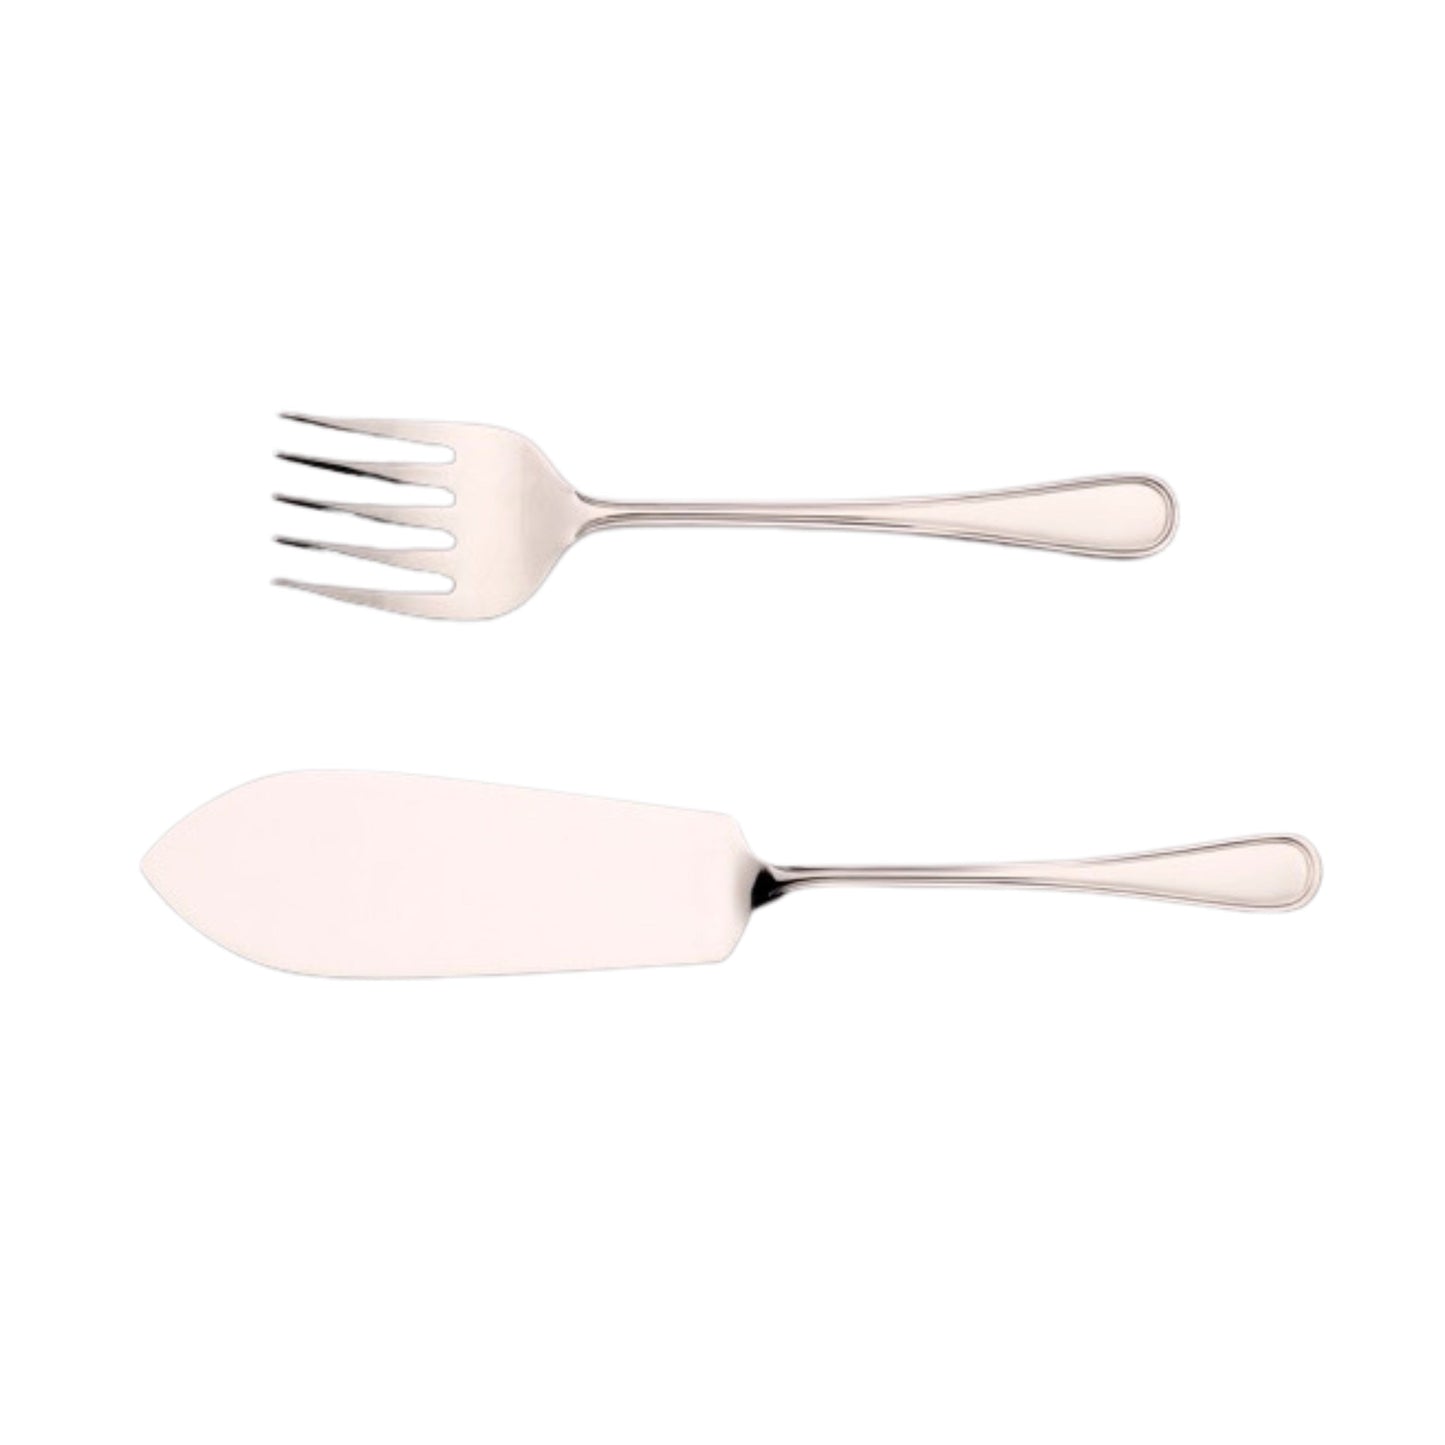 Plain Fiddle stainless steel flatware cutlery